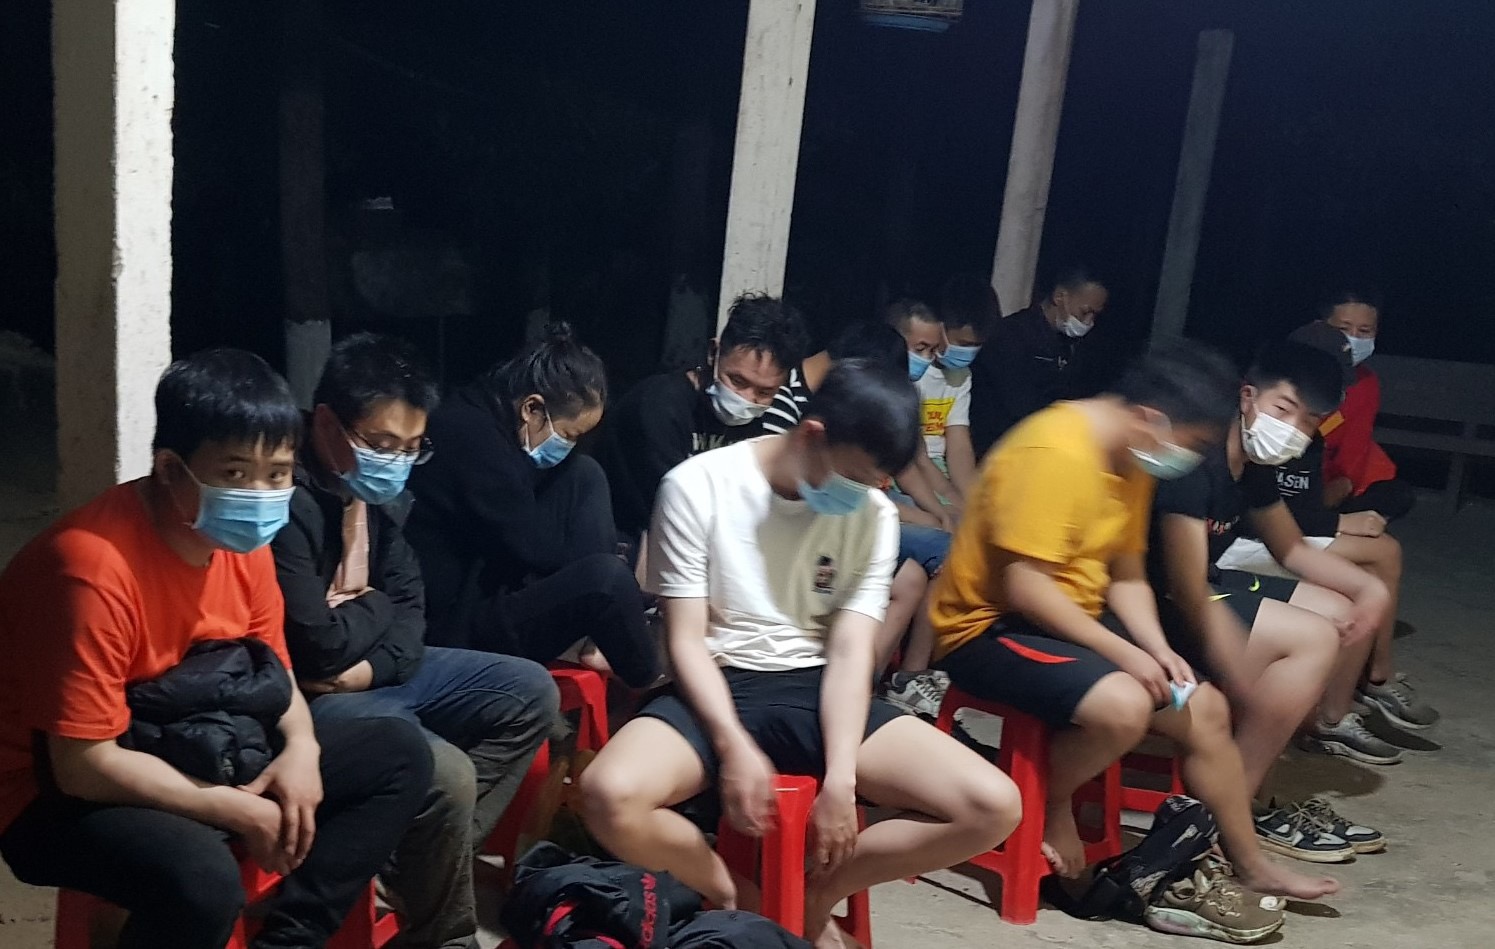 “Lọt lưới” người nhập cảnh trái phép vào Việt Nam